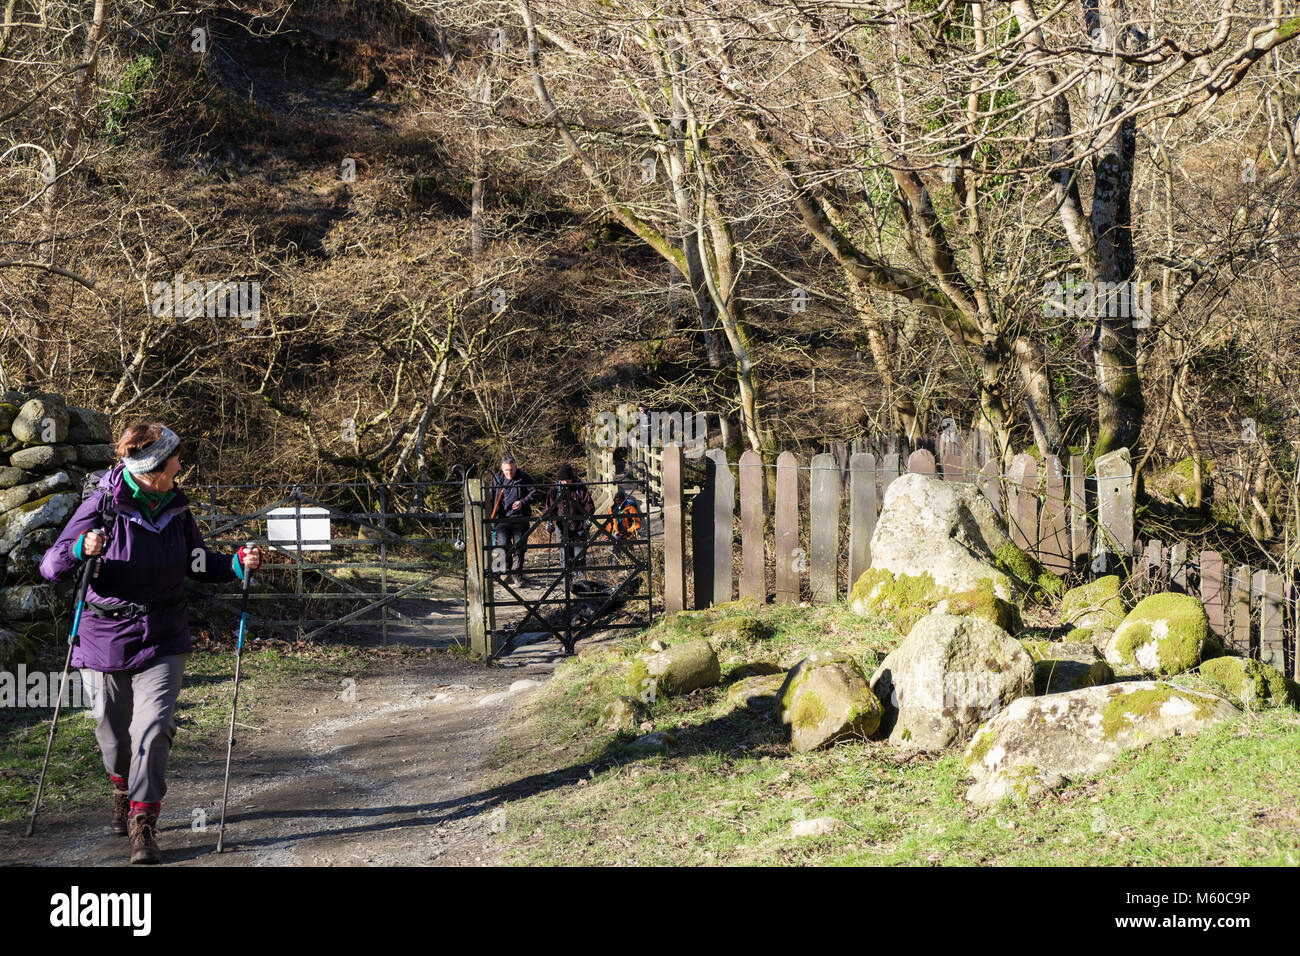 Les promeneurs sur la piste sentier à Aber Falls ou dans Coedydd Rhaeadr Fawr Aber Réserve naturelle nationale. Abergwyngregyn, Gwynedd, Pays de Galles, Royaume-Uni, Angleterre Banque D'Images